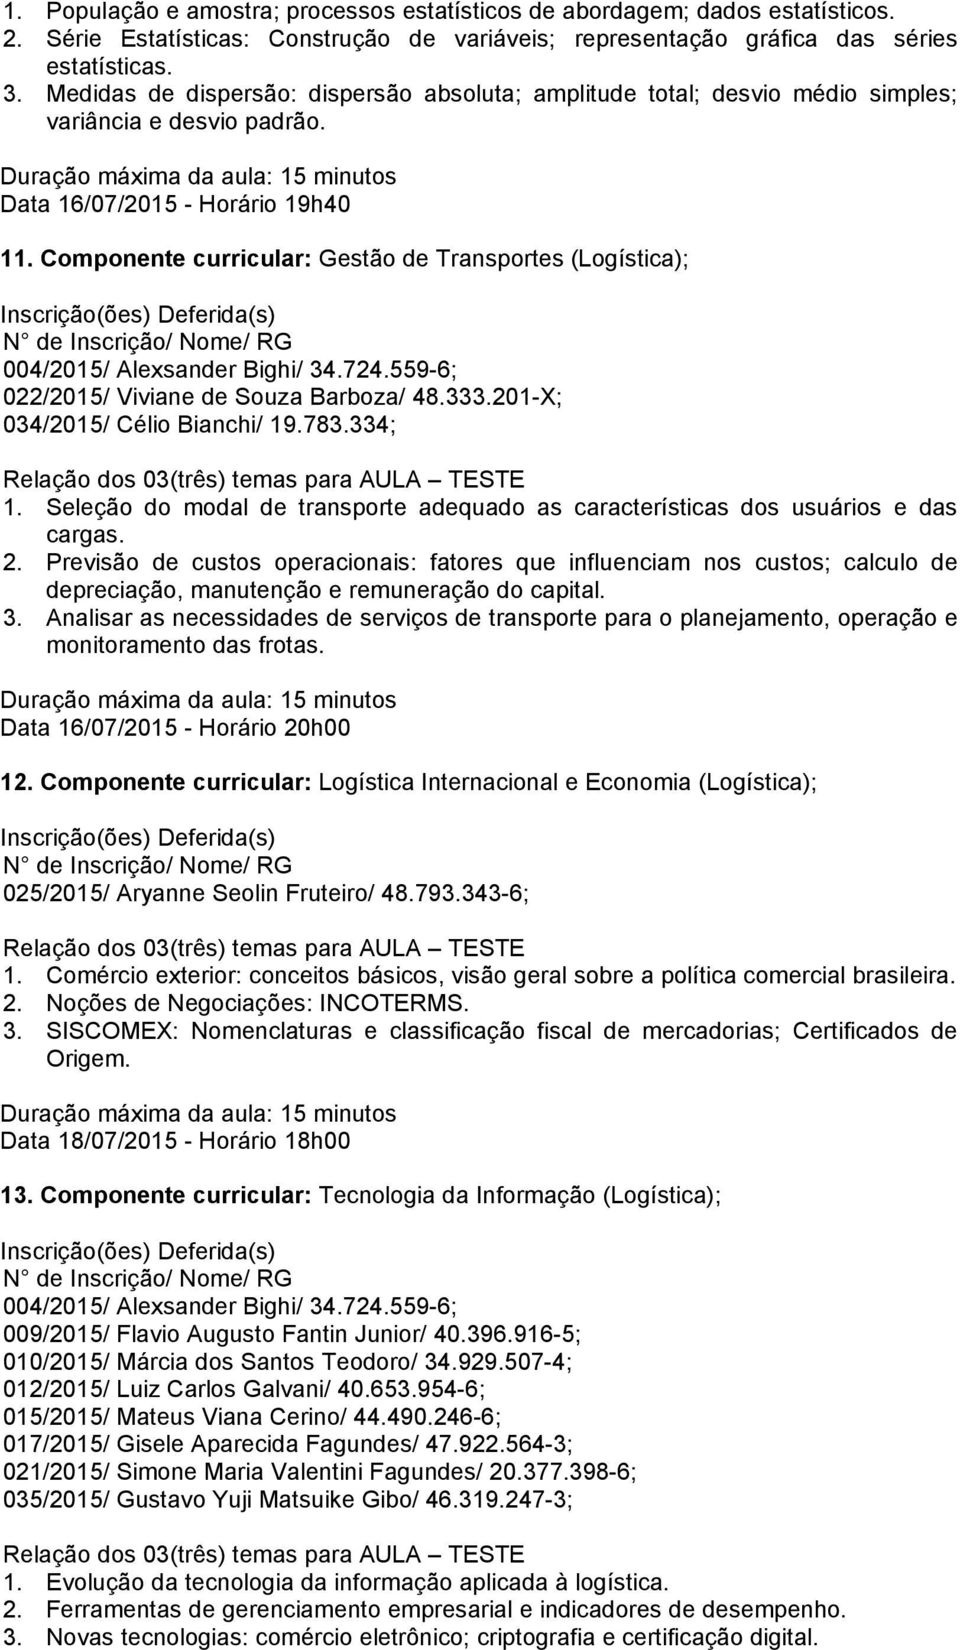 Componente curricular: Gestão de Transportes (Logística); 022/2015/ Viviane de Souza Barboza/ 48.333.201-X; 1. Seleção do modal de transporte adequado as características dos usuários e das cargas. 2.